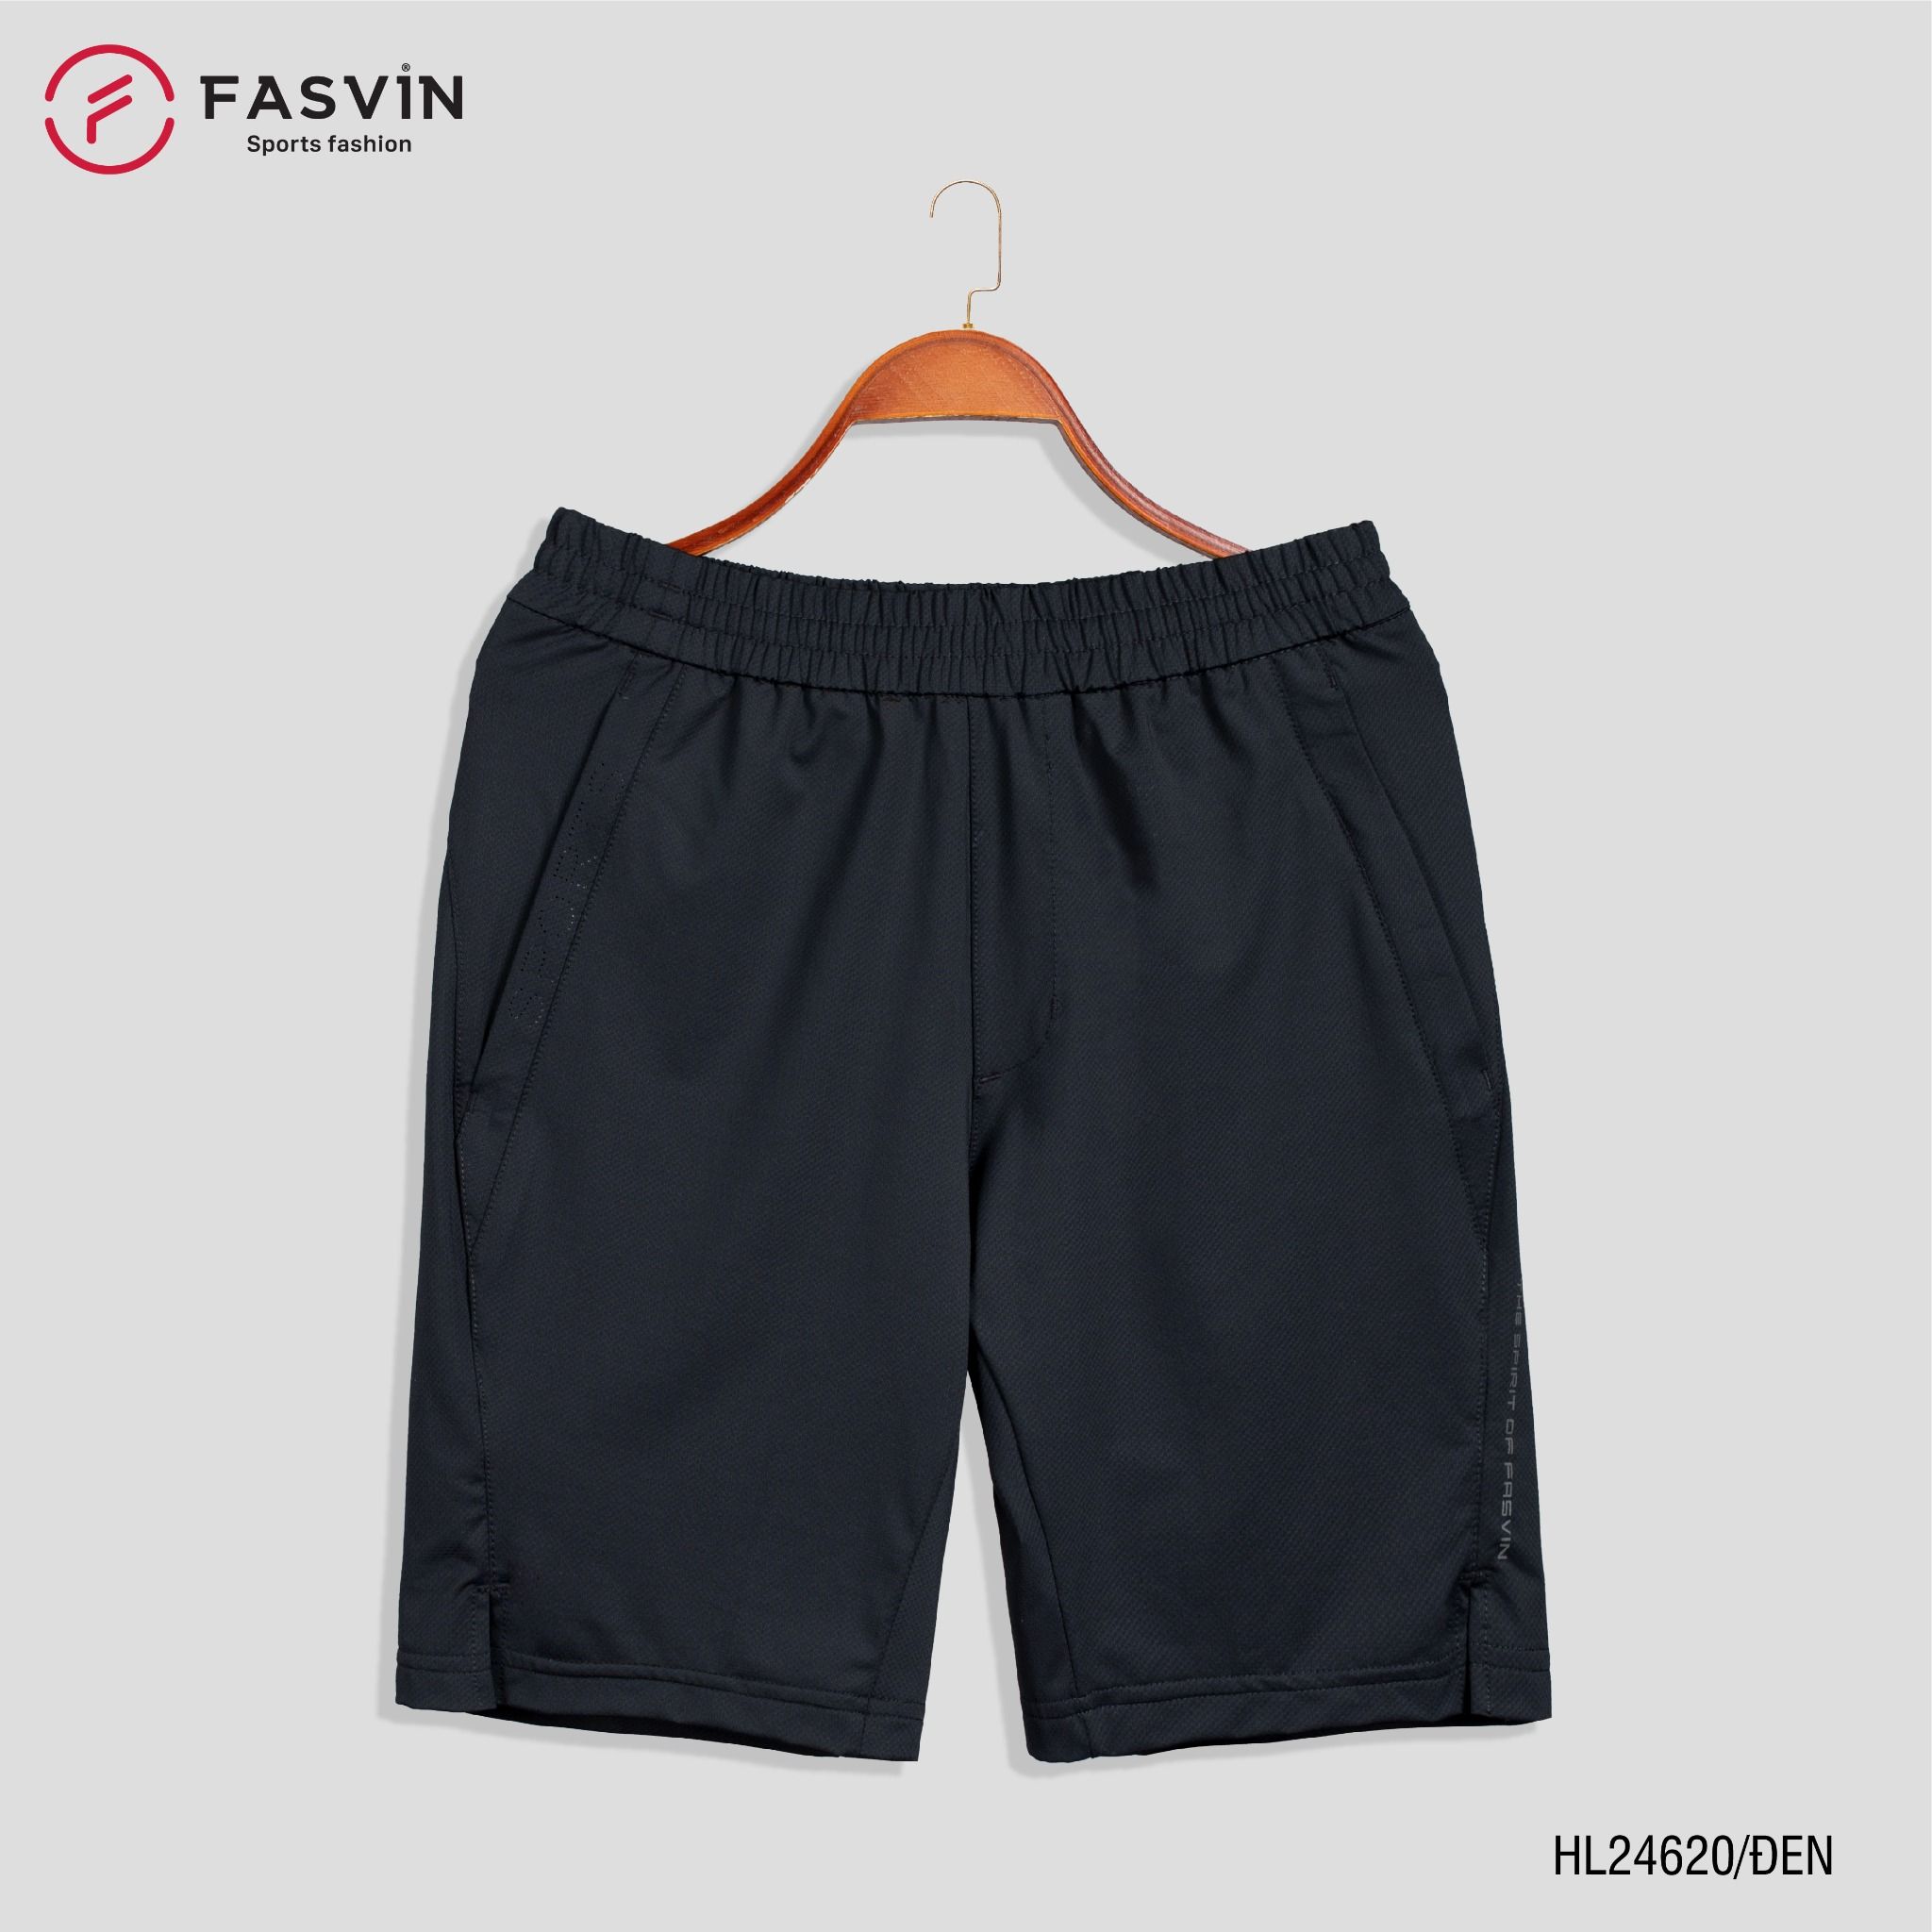  Quần short thể thao nam Fasvin HL24620 chất liệu cao cấp mềm mịn, không nhăn co giãn thoải mái 